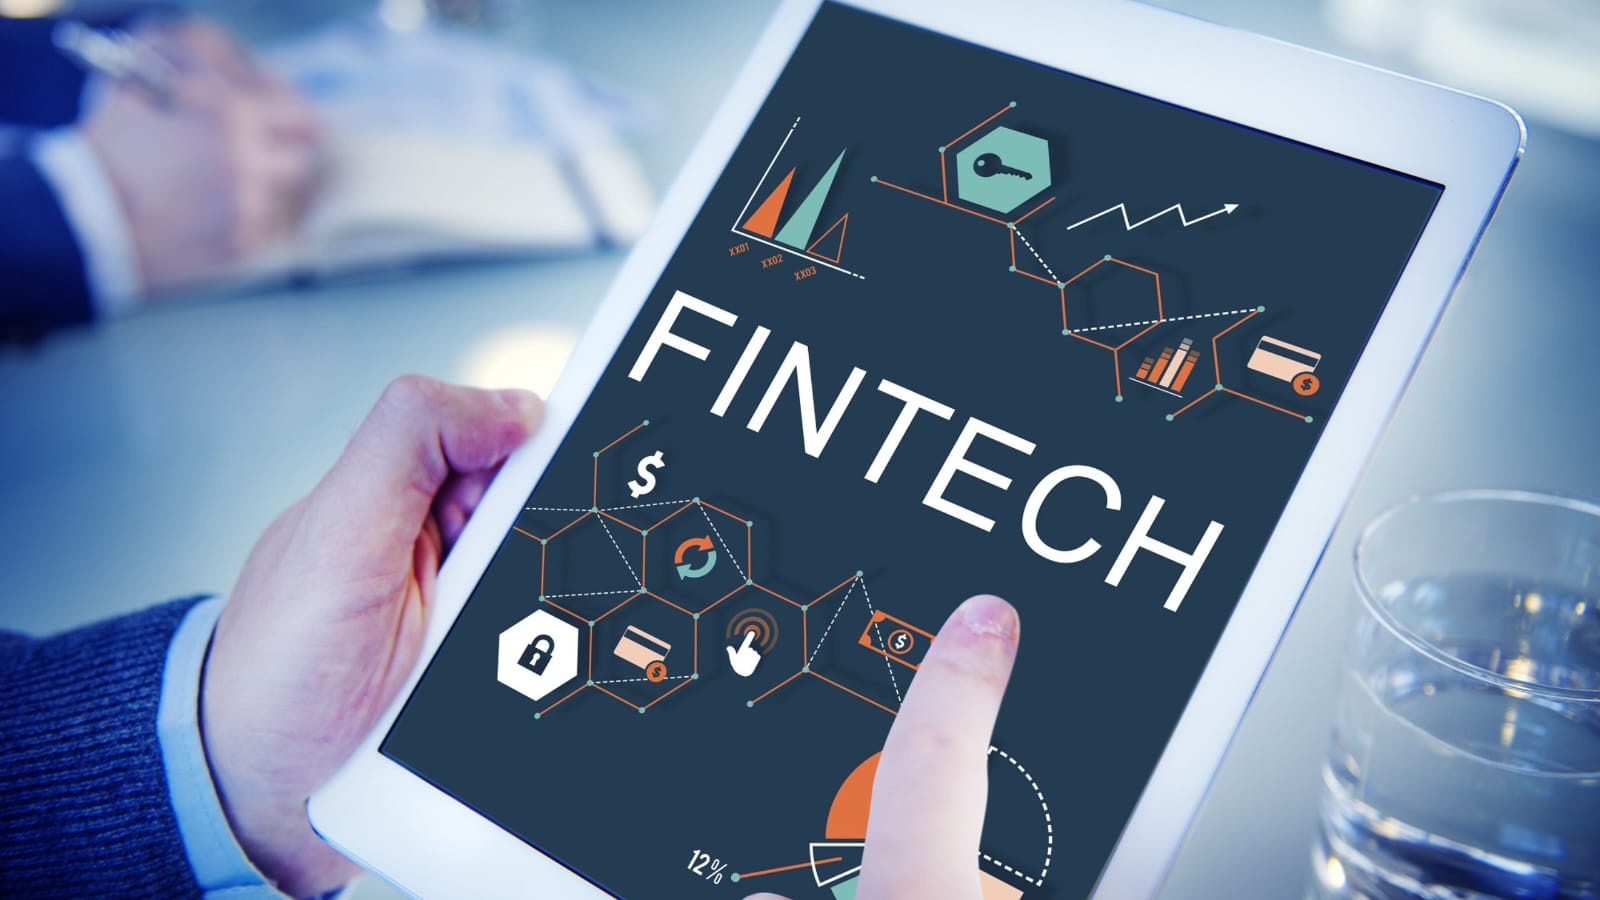 Pinjaman Online dan Tantangan Terkait: Bijak Mengelola Keuangan di Era Fintech